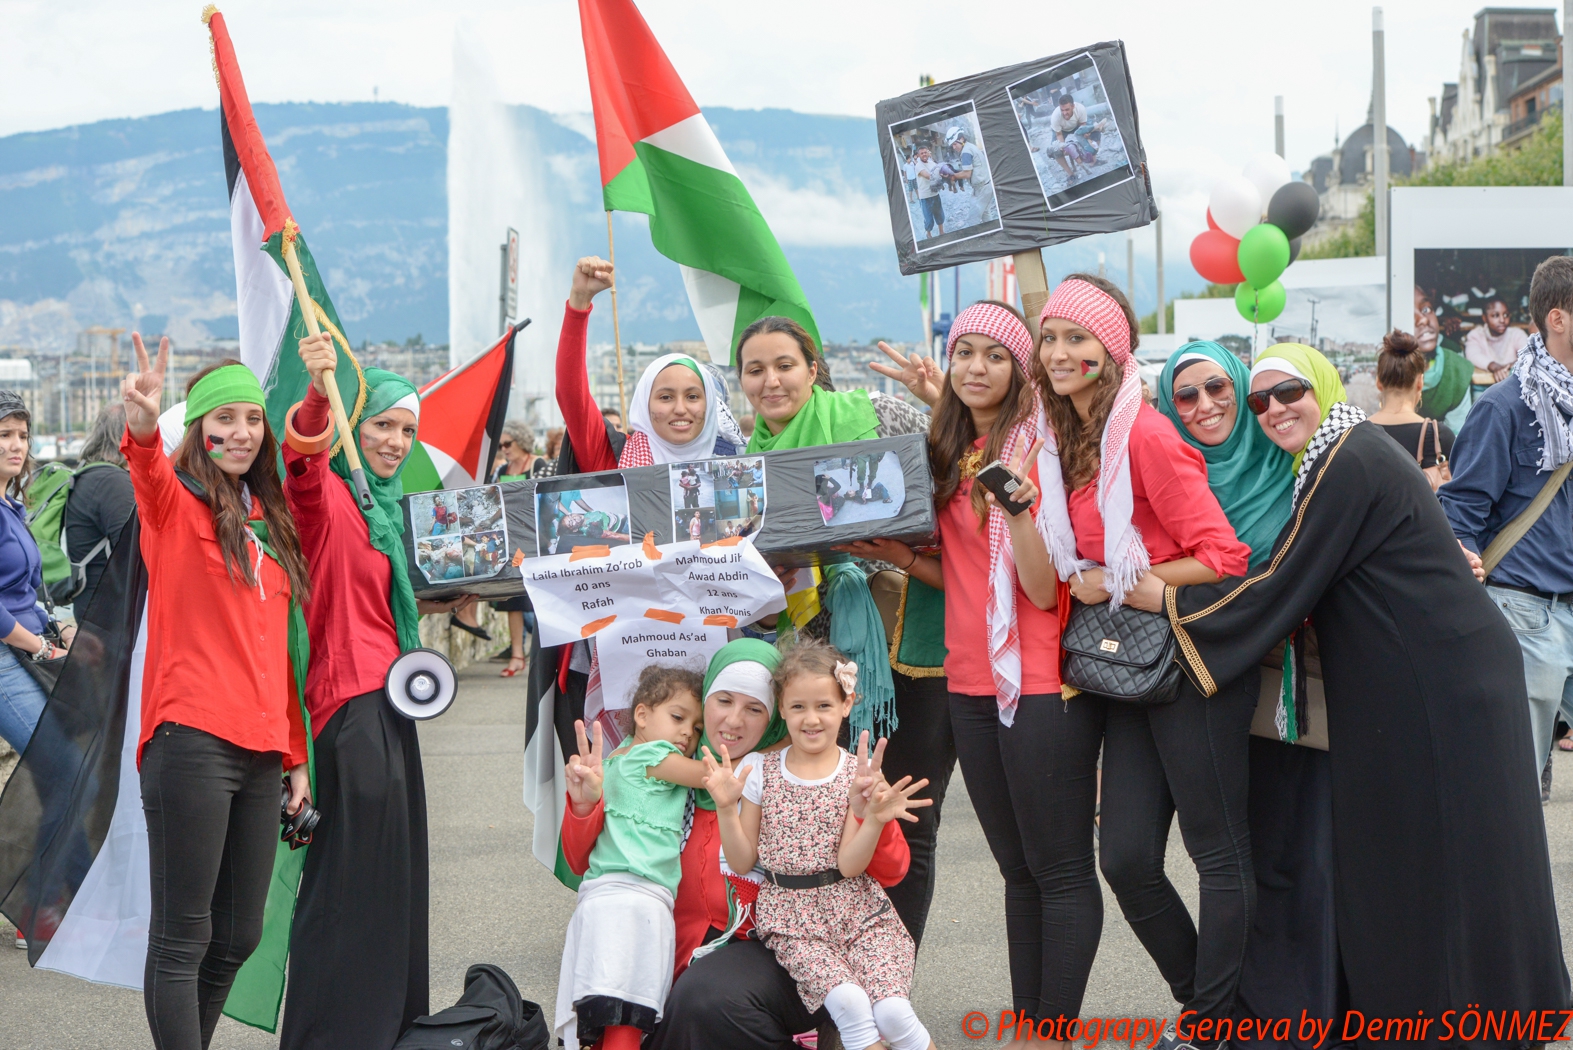 Grande manifestation pacifique à Genève en soutien au peuple Palestinien-6707.jpg